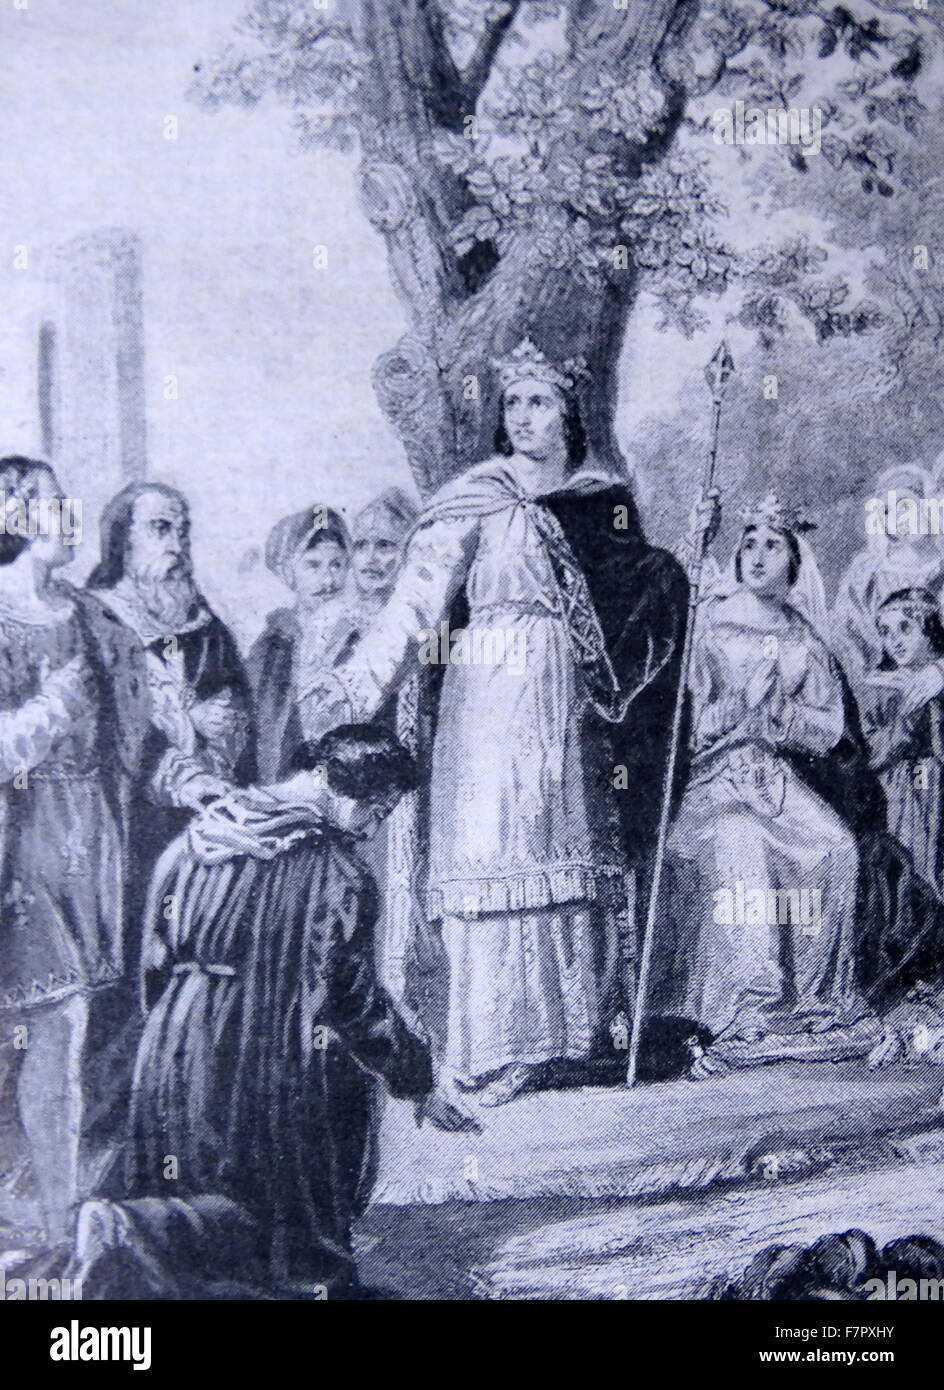 Luis IX (25 de abril de 1214 - 25 de agosto de 1270), comúnmente conocido como Saint Louis, fue una de los Capetos, Rey de Francia, que reinó desde 1226 hasta su muerte. Louis fue coronado en Reims a la edad de 12 años, tras la muerte de su padre, Luis VIII el León, aunque su madre, Blanca de Castilla, gobernó el Reino hasta que alcanzaron la madurez Foto de stock